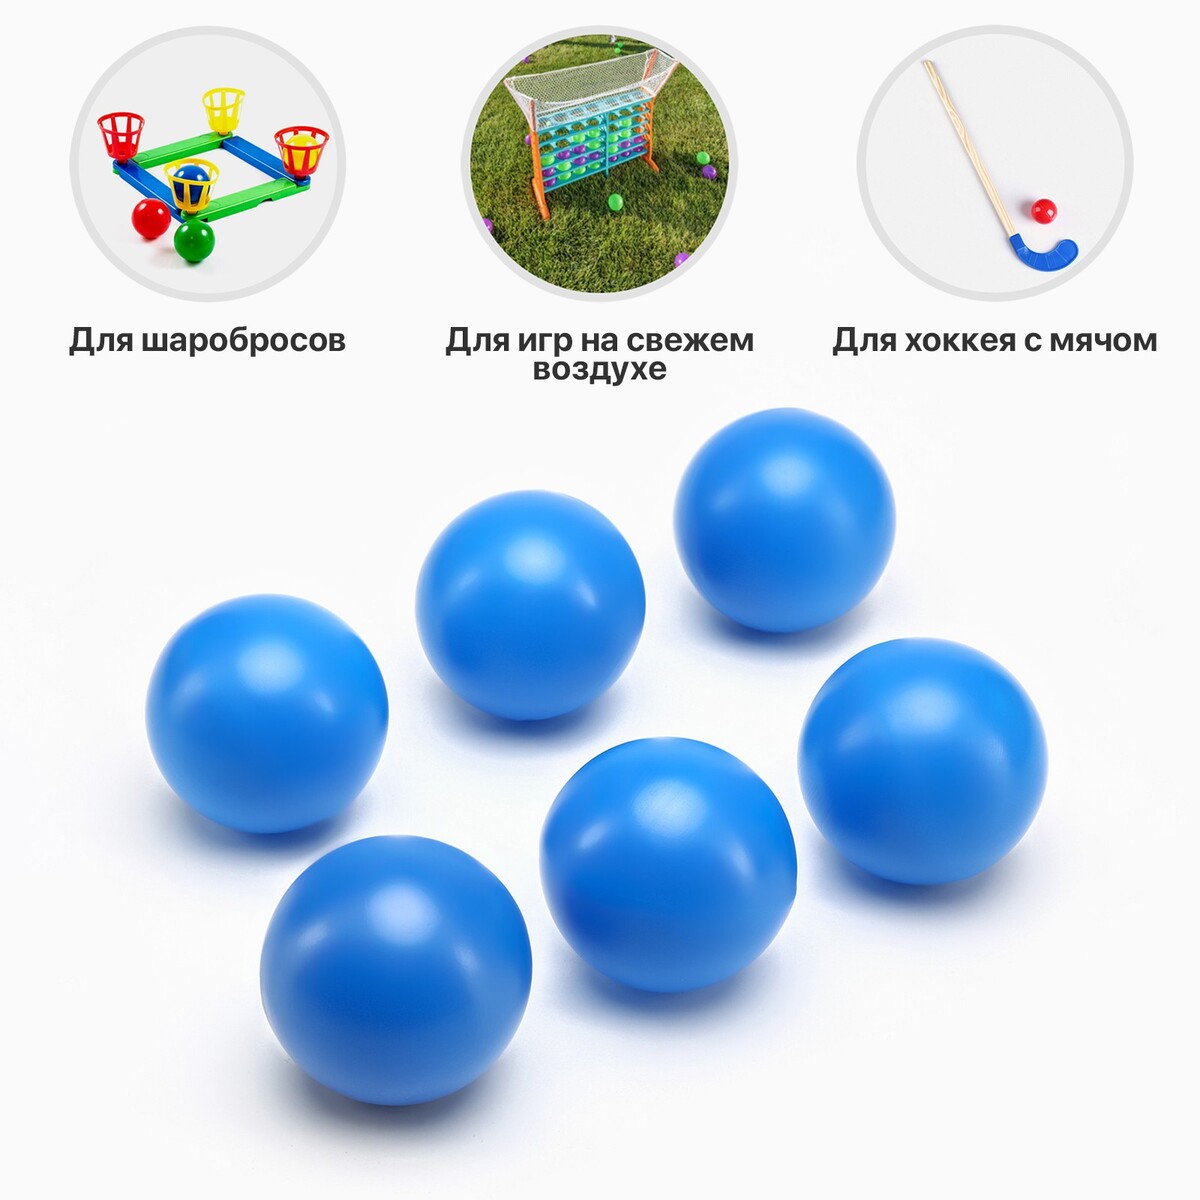 Набор мячей для садовых игр, хоккея, 6 шт, d-7 см набор мячей для настольного тенниса onlytop d 40 мм 6 шт белый